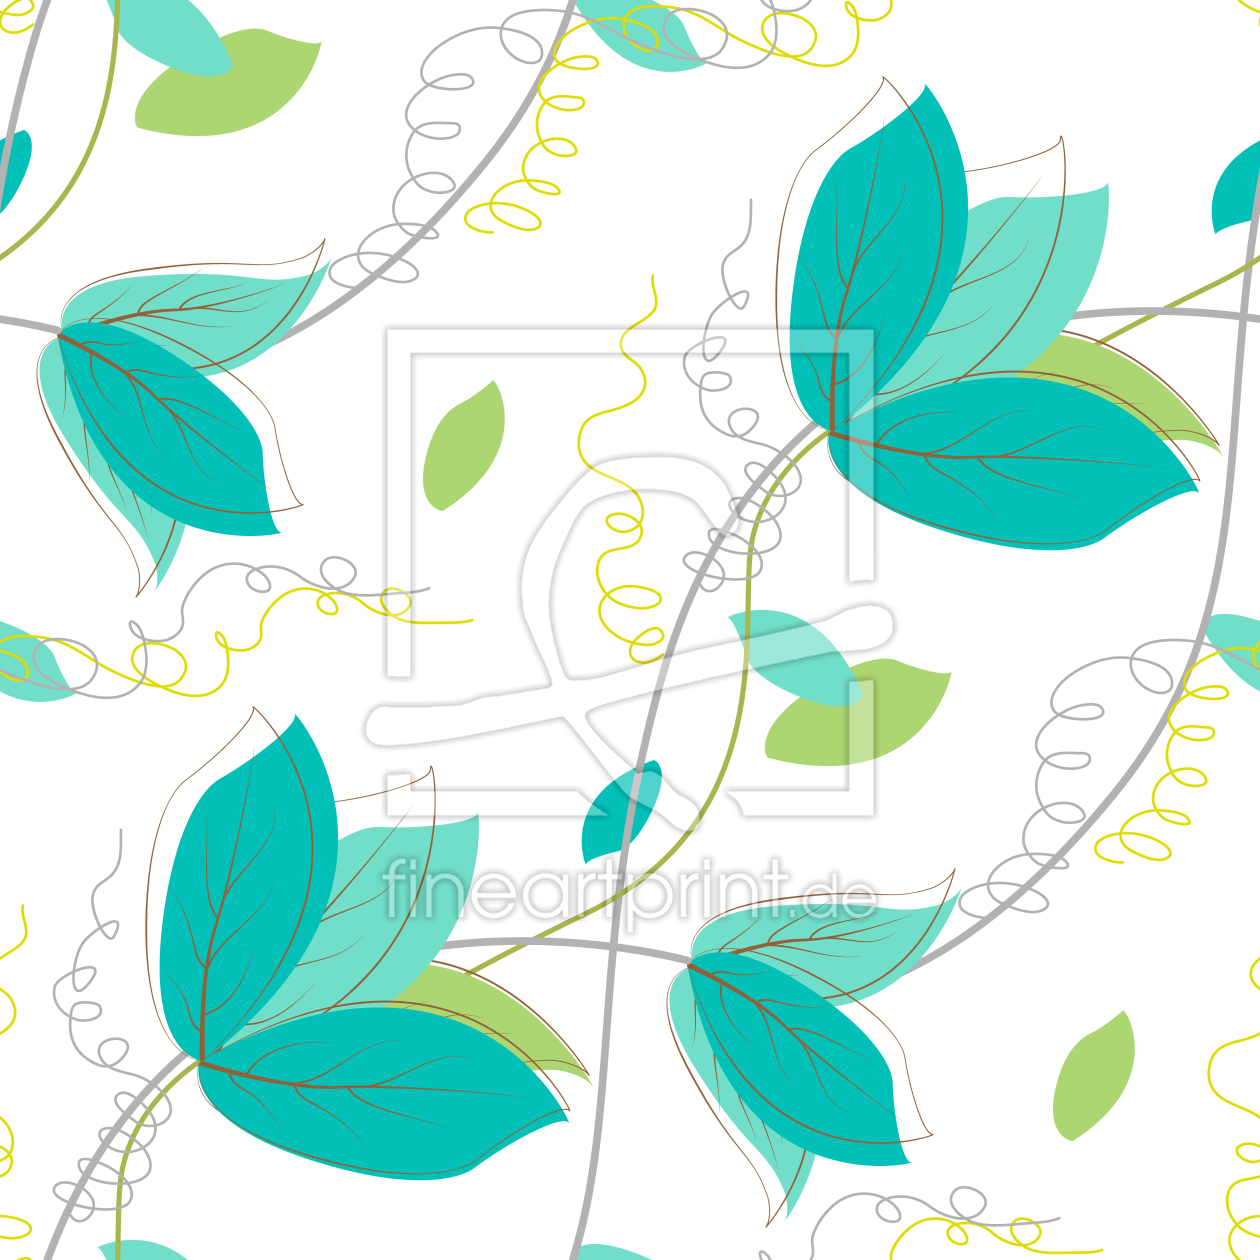 Bild-Nr.: 9026113 Zarte Blätter erstellt von patterndesigns-com